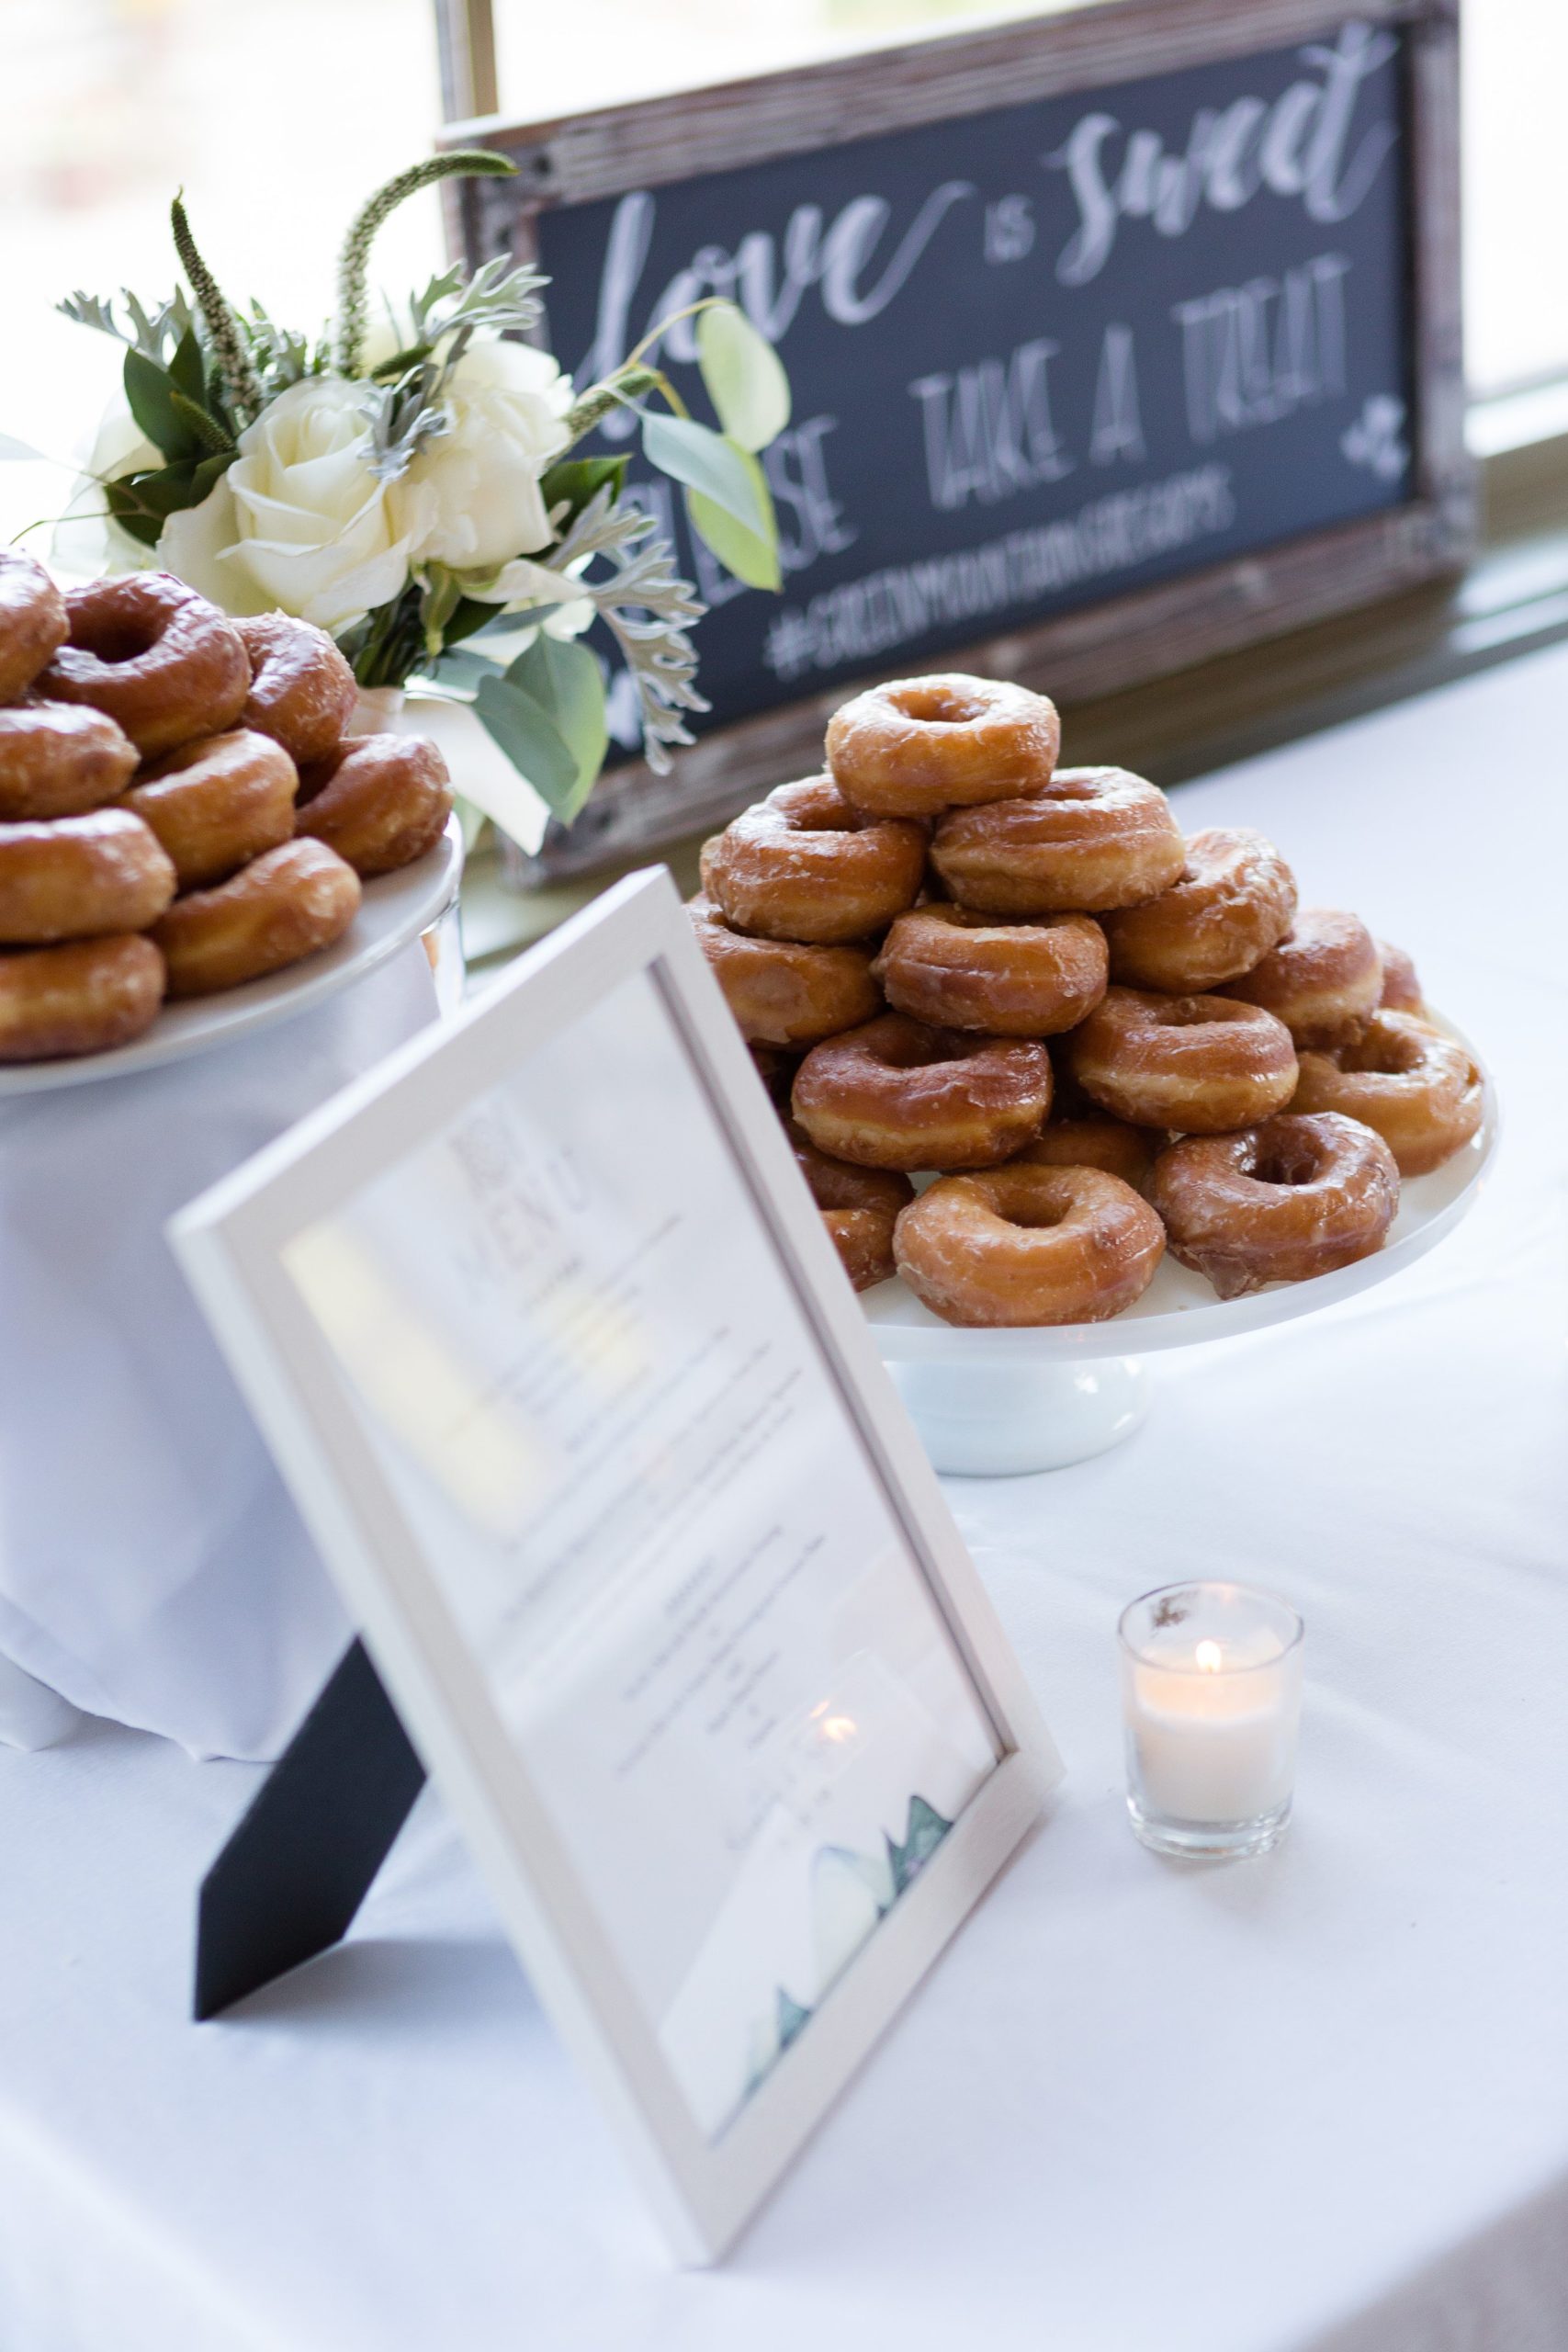 Donut table for wedding dessert 